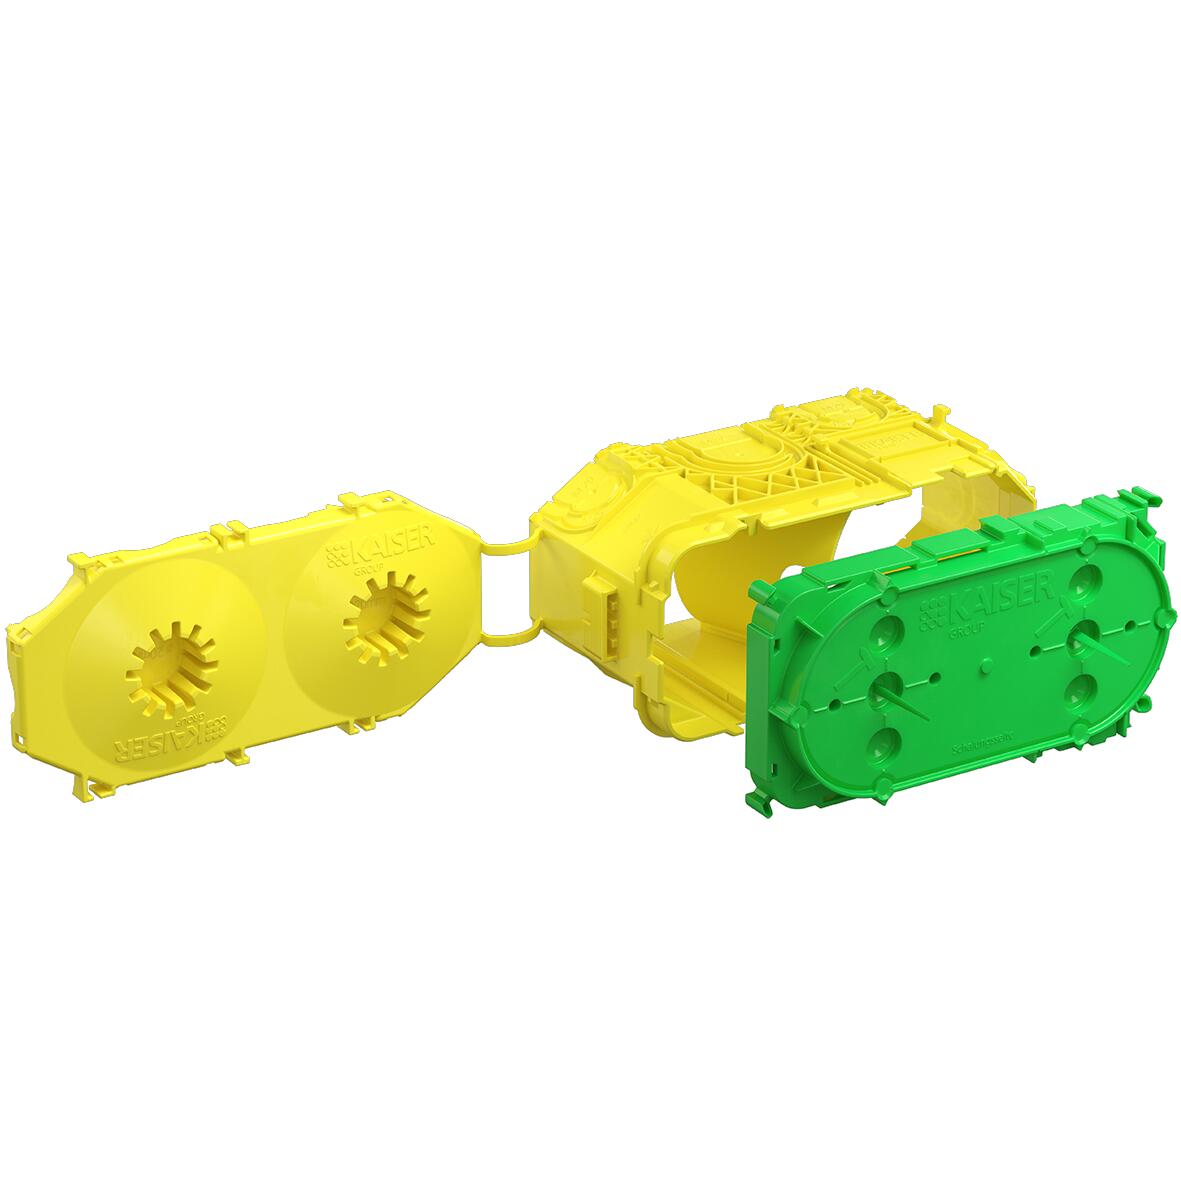 Beton-Geräte-Verbindungsdose mit Deckel, 2-fach, 45 mm (flach), gelb